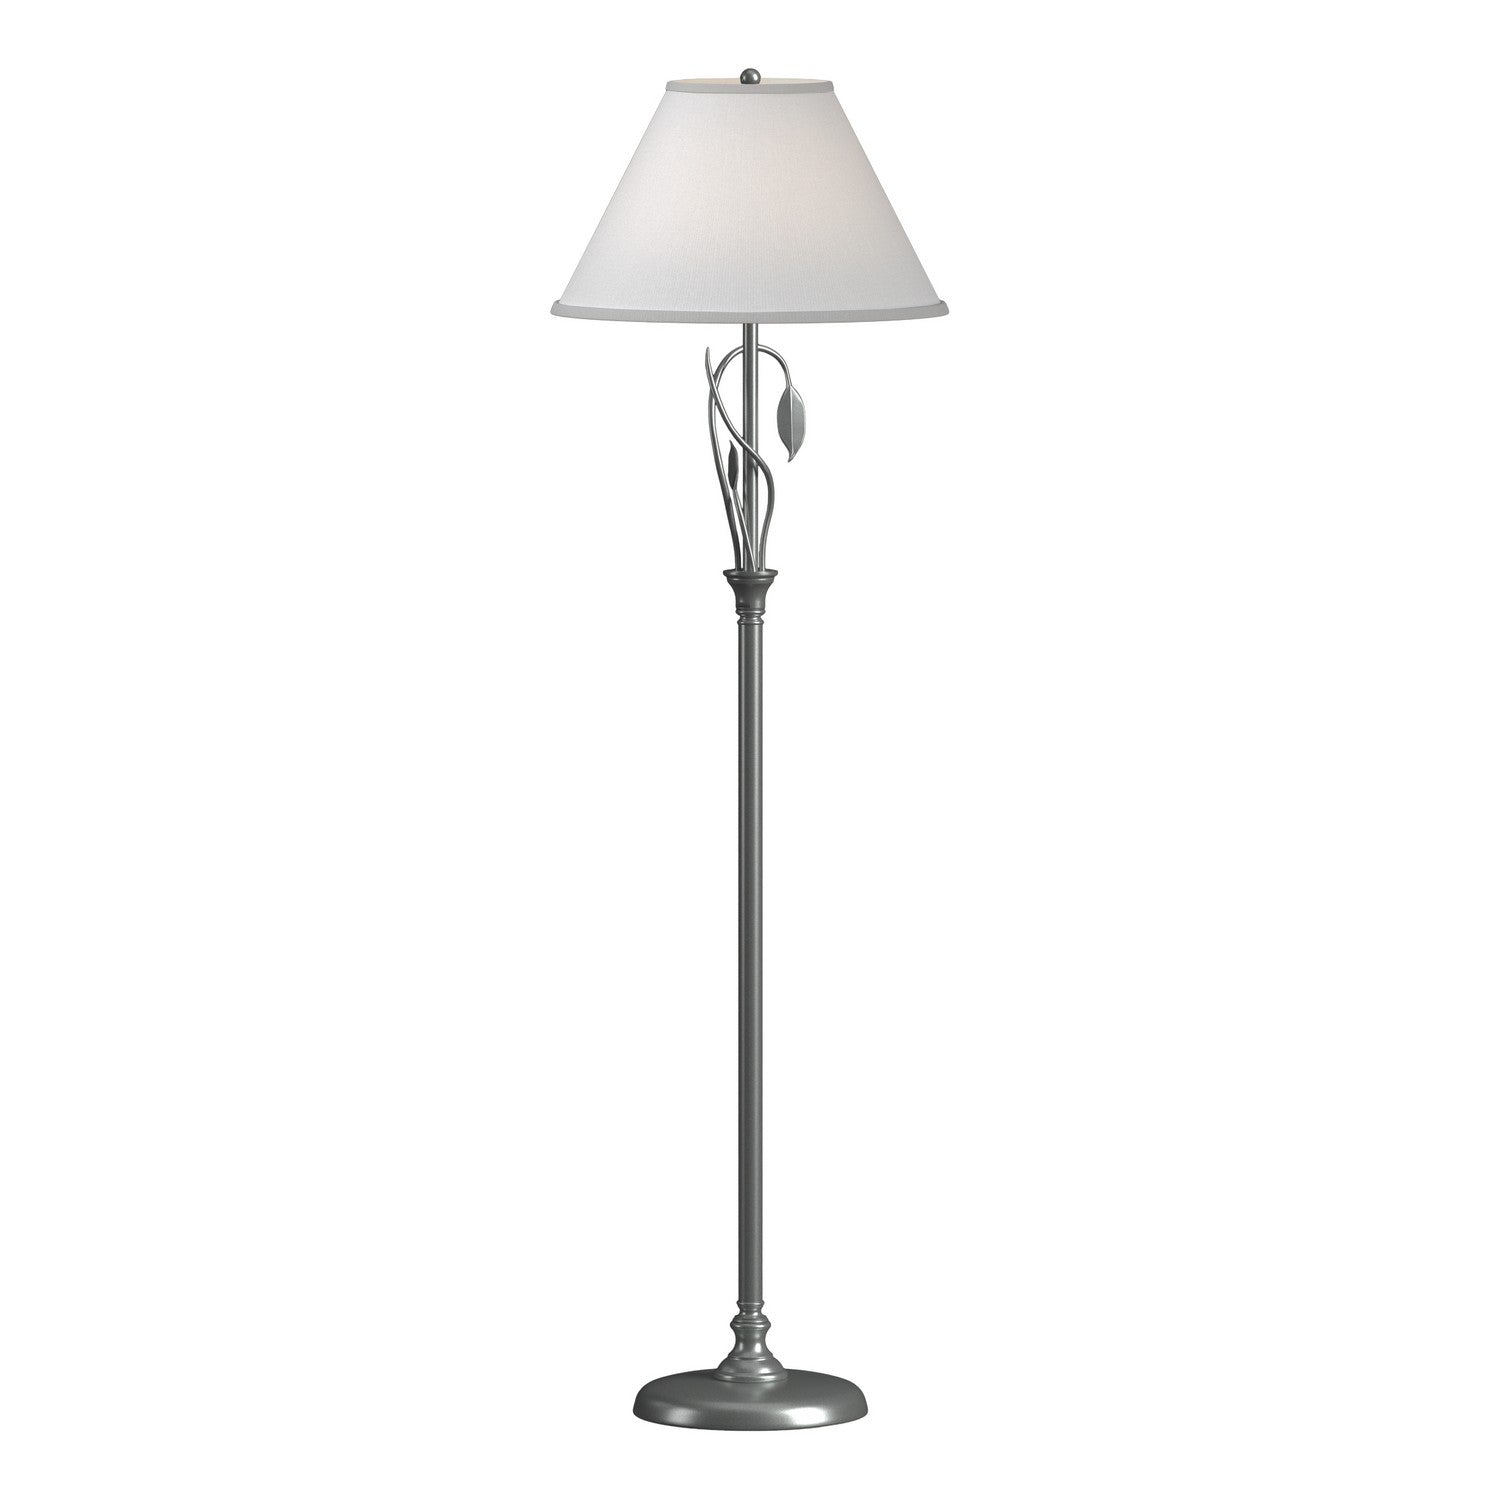 Hubbardton Forge - One Light Floor Lamp - Leaf - Vintage Platinum- Union Lighting Luminaires Decor